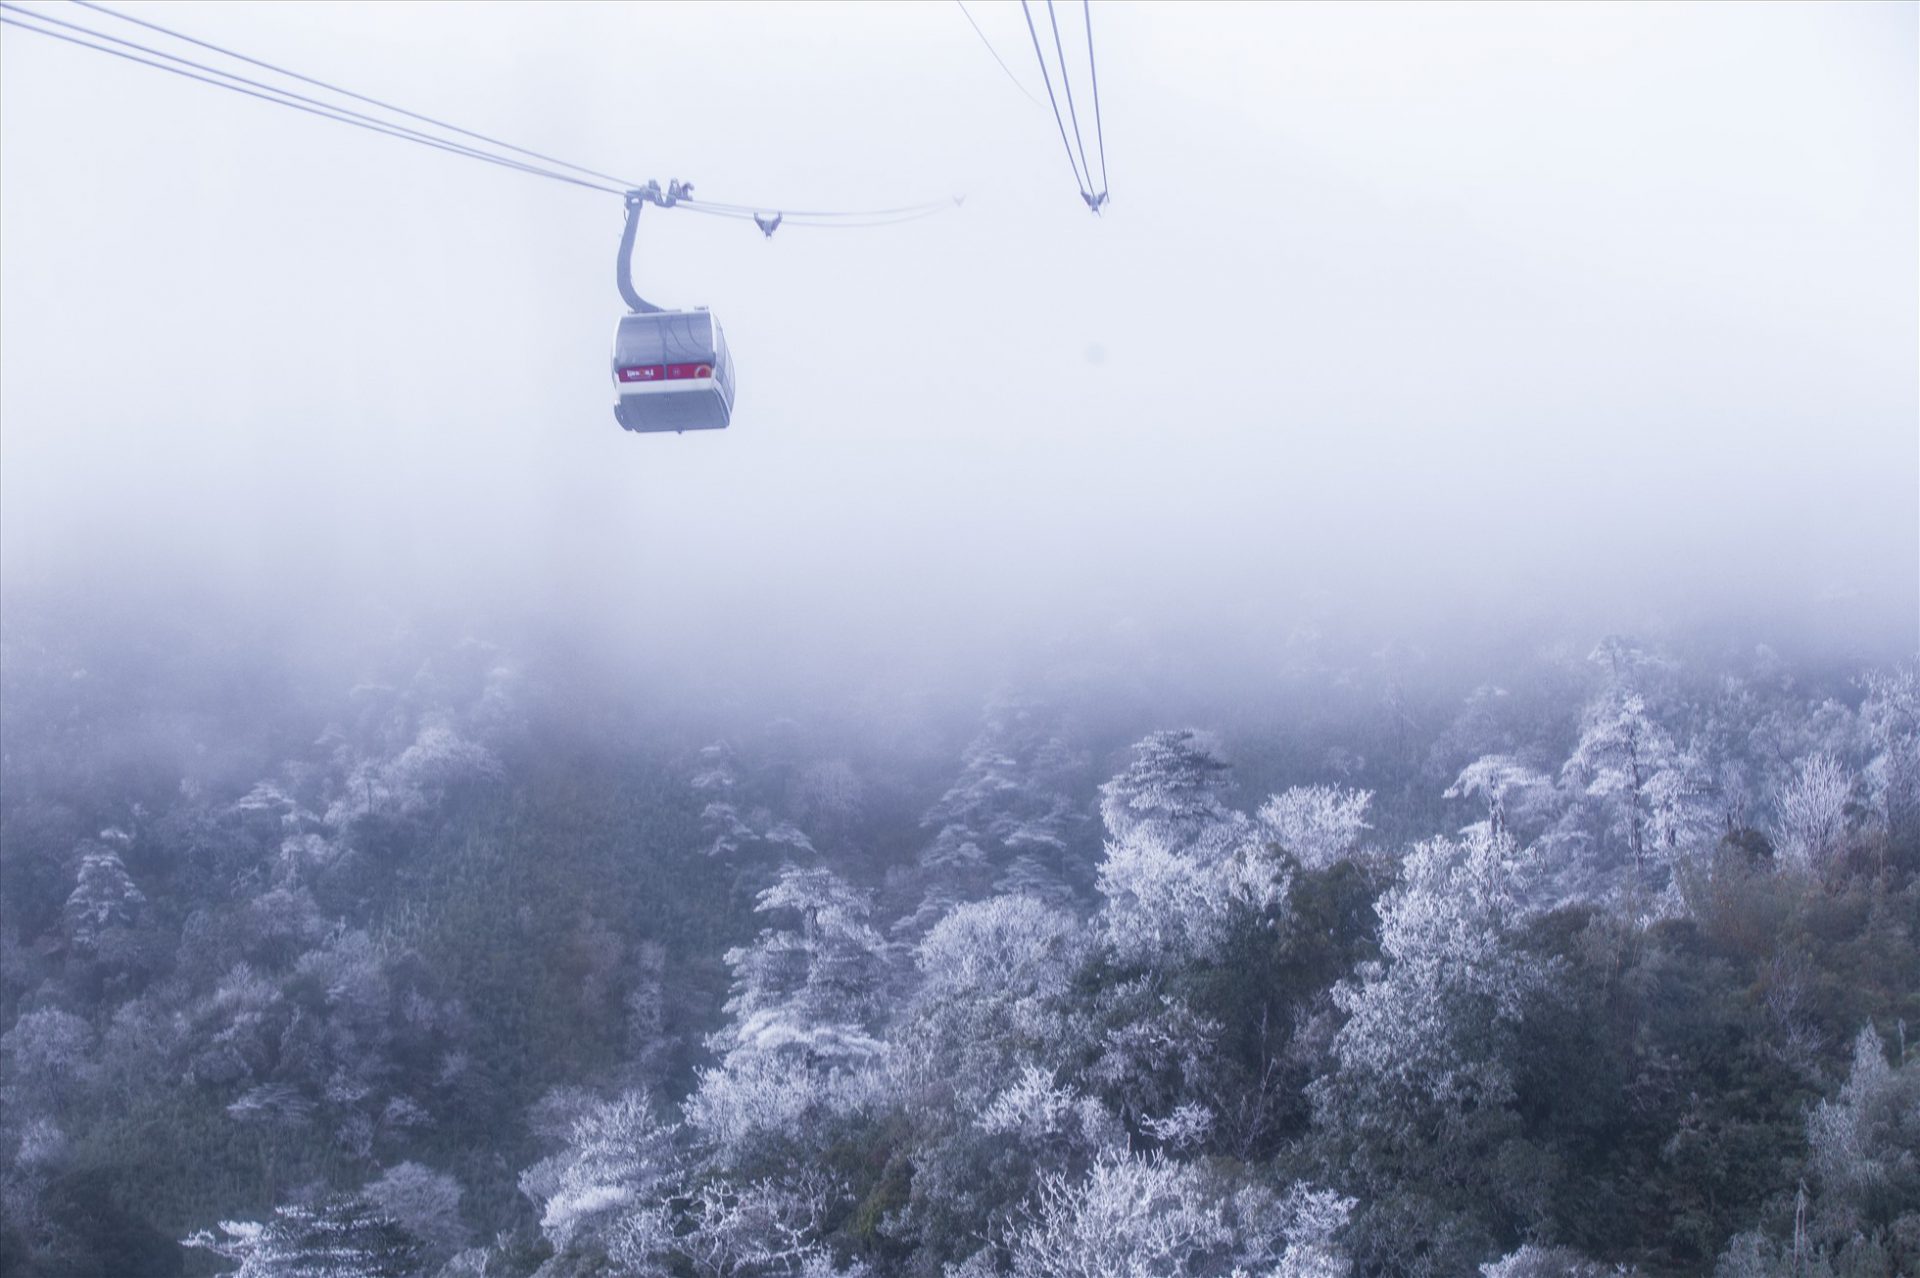 Từ trên cáp treo, du khách có thể tận mắt ngắm nhìn thiên nhiên kỳ vĩ của núi rừng Hoàng Liên khoác lên mình tấm áo băng trắng xóa.